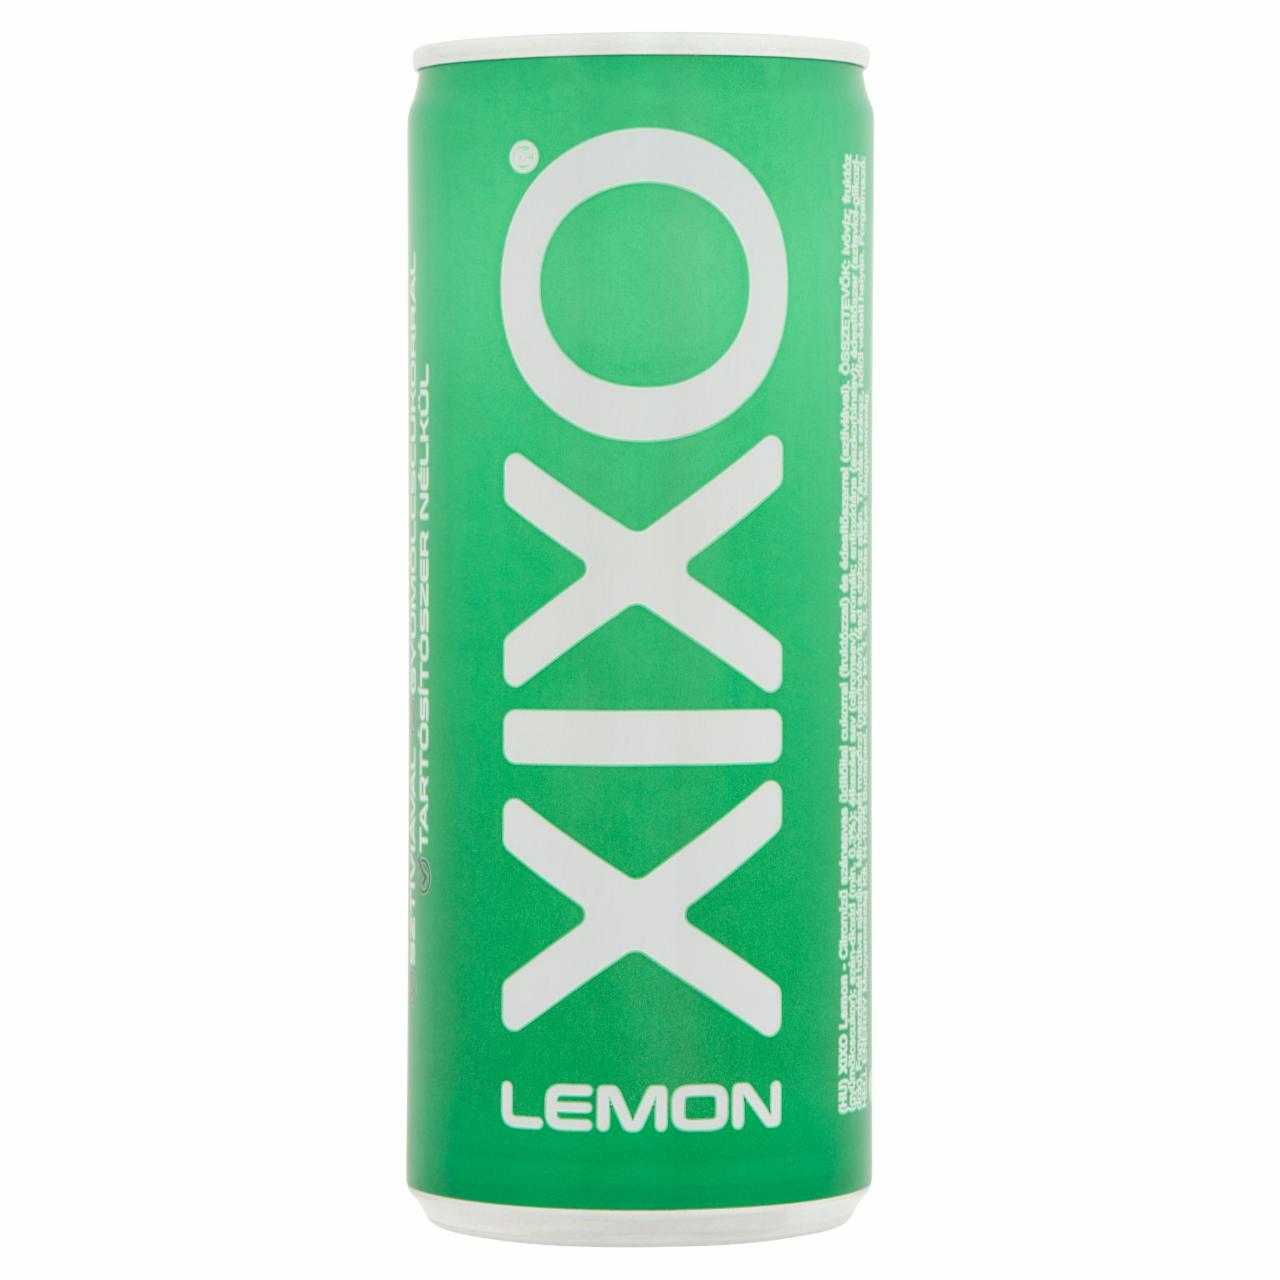 Képek - XIXO Lemon citromízű szénsavas üdítőital 250 ml